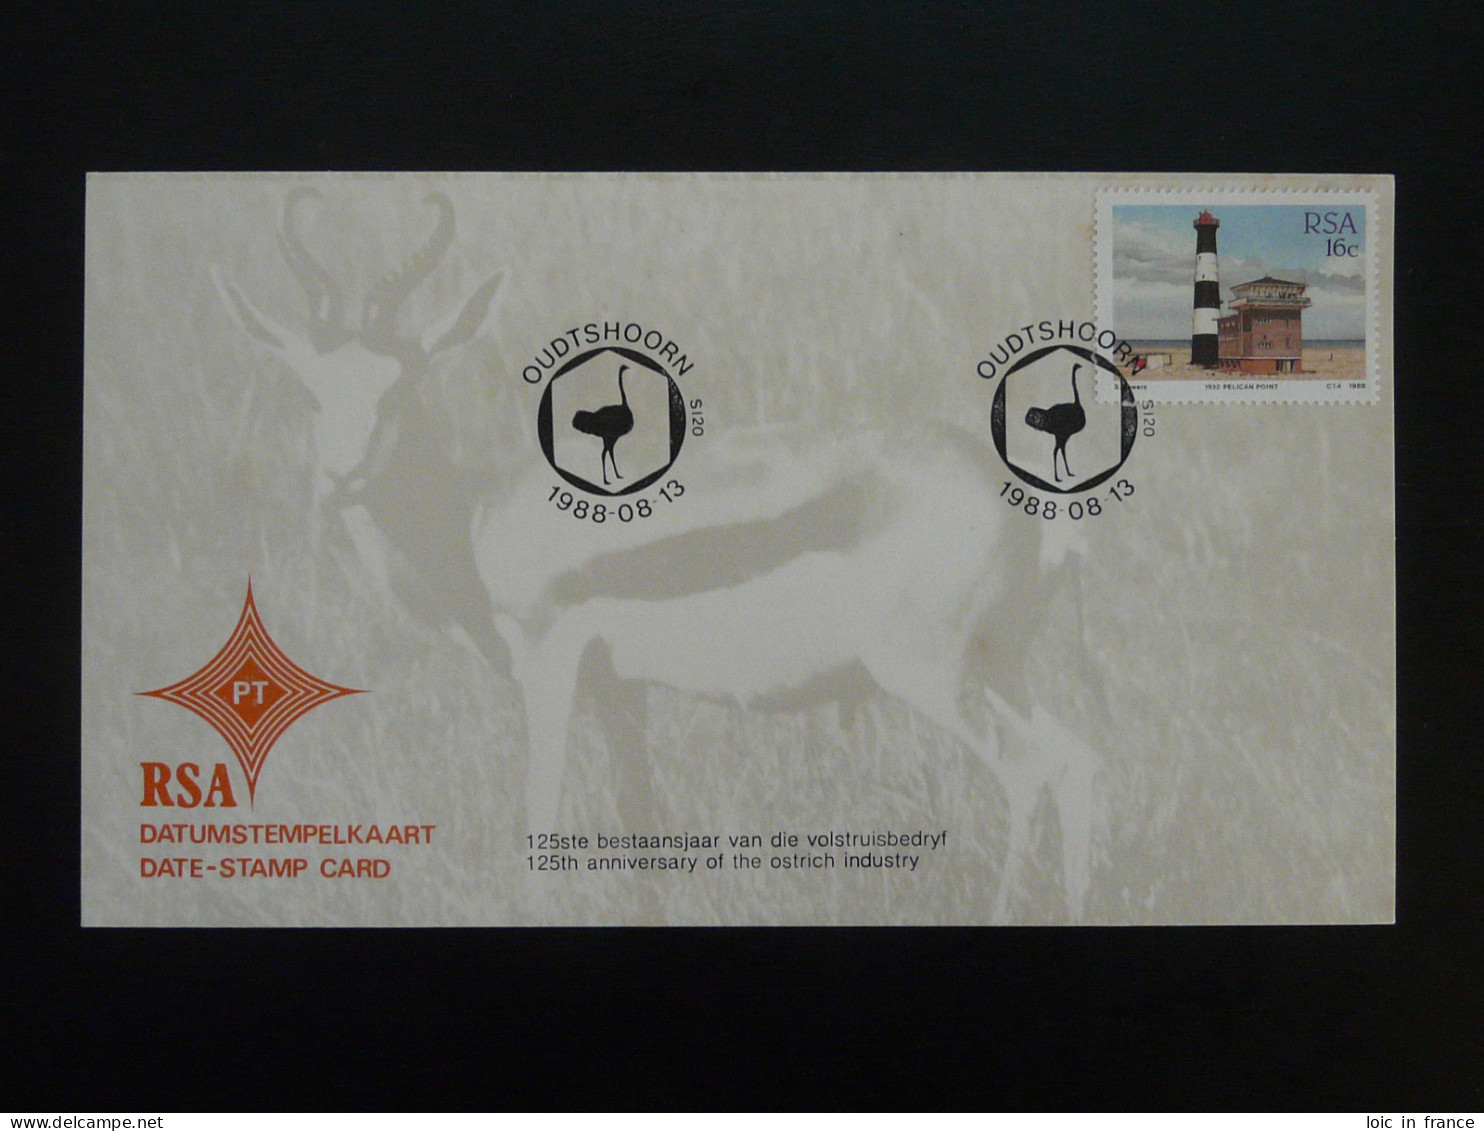 Oblitération Postmark Autruche Ostrich Afrique Du Sud South Africa 1988 - Autruches